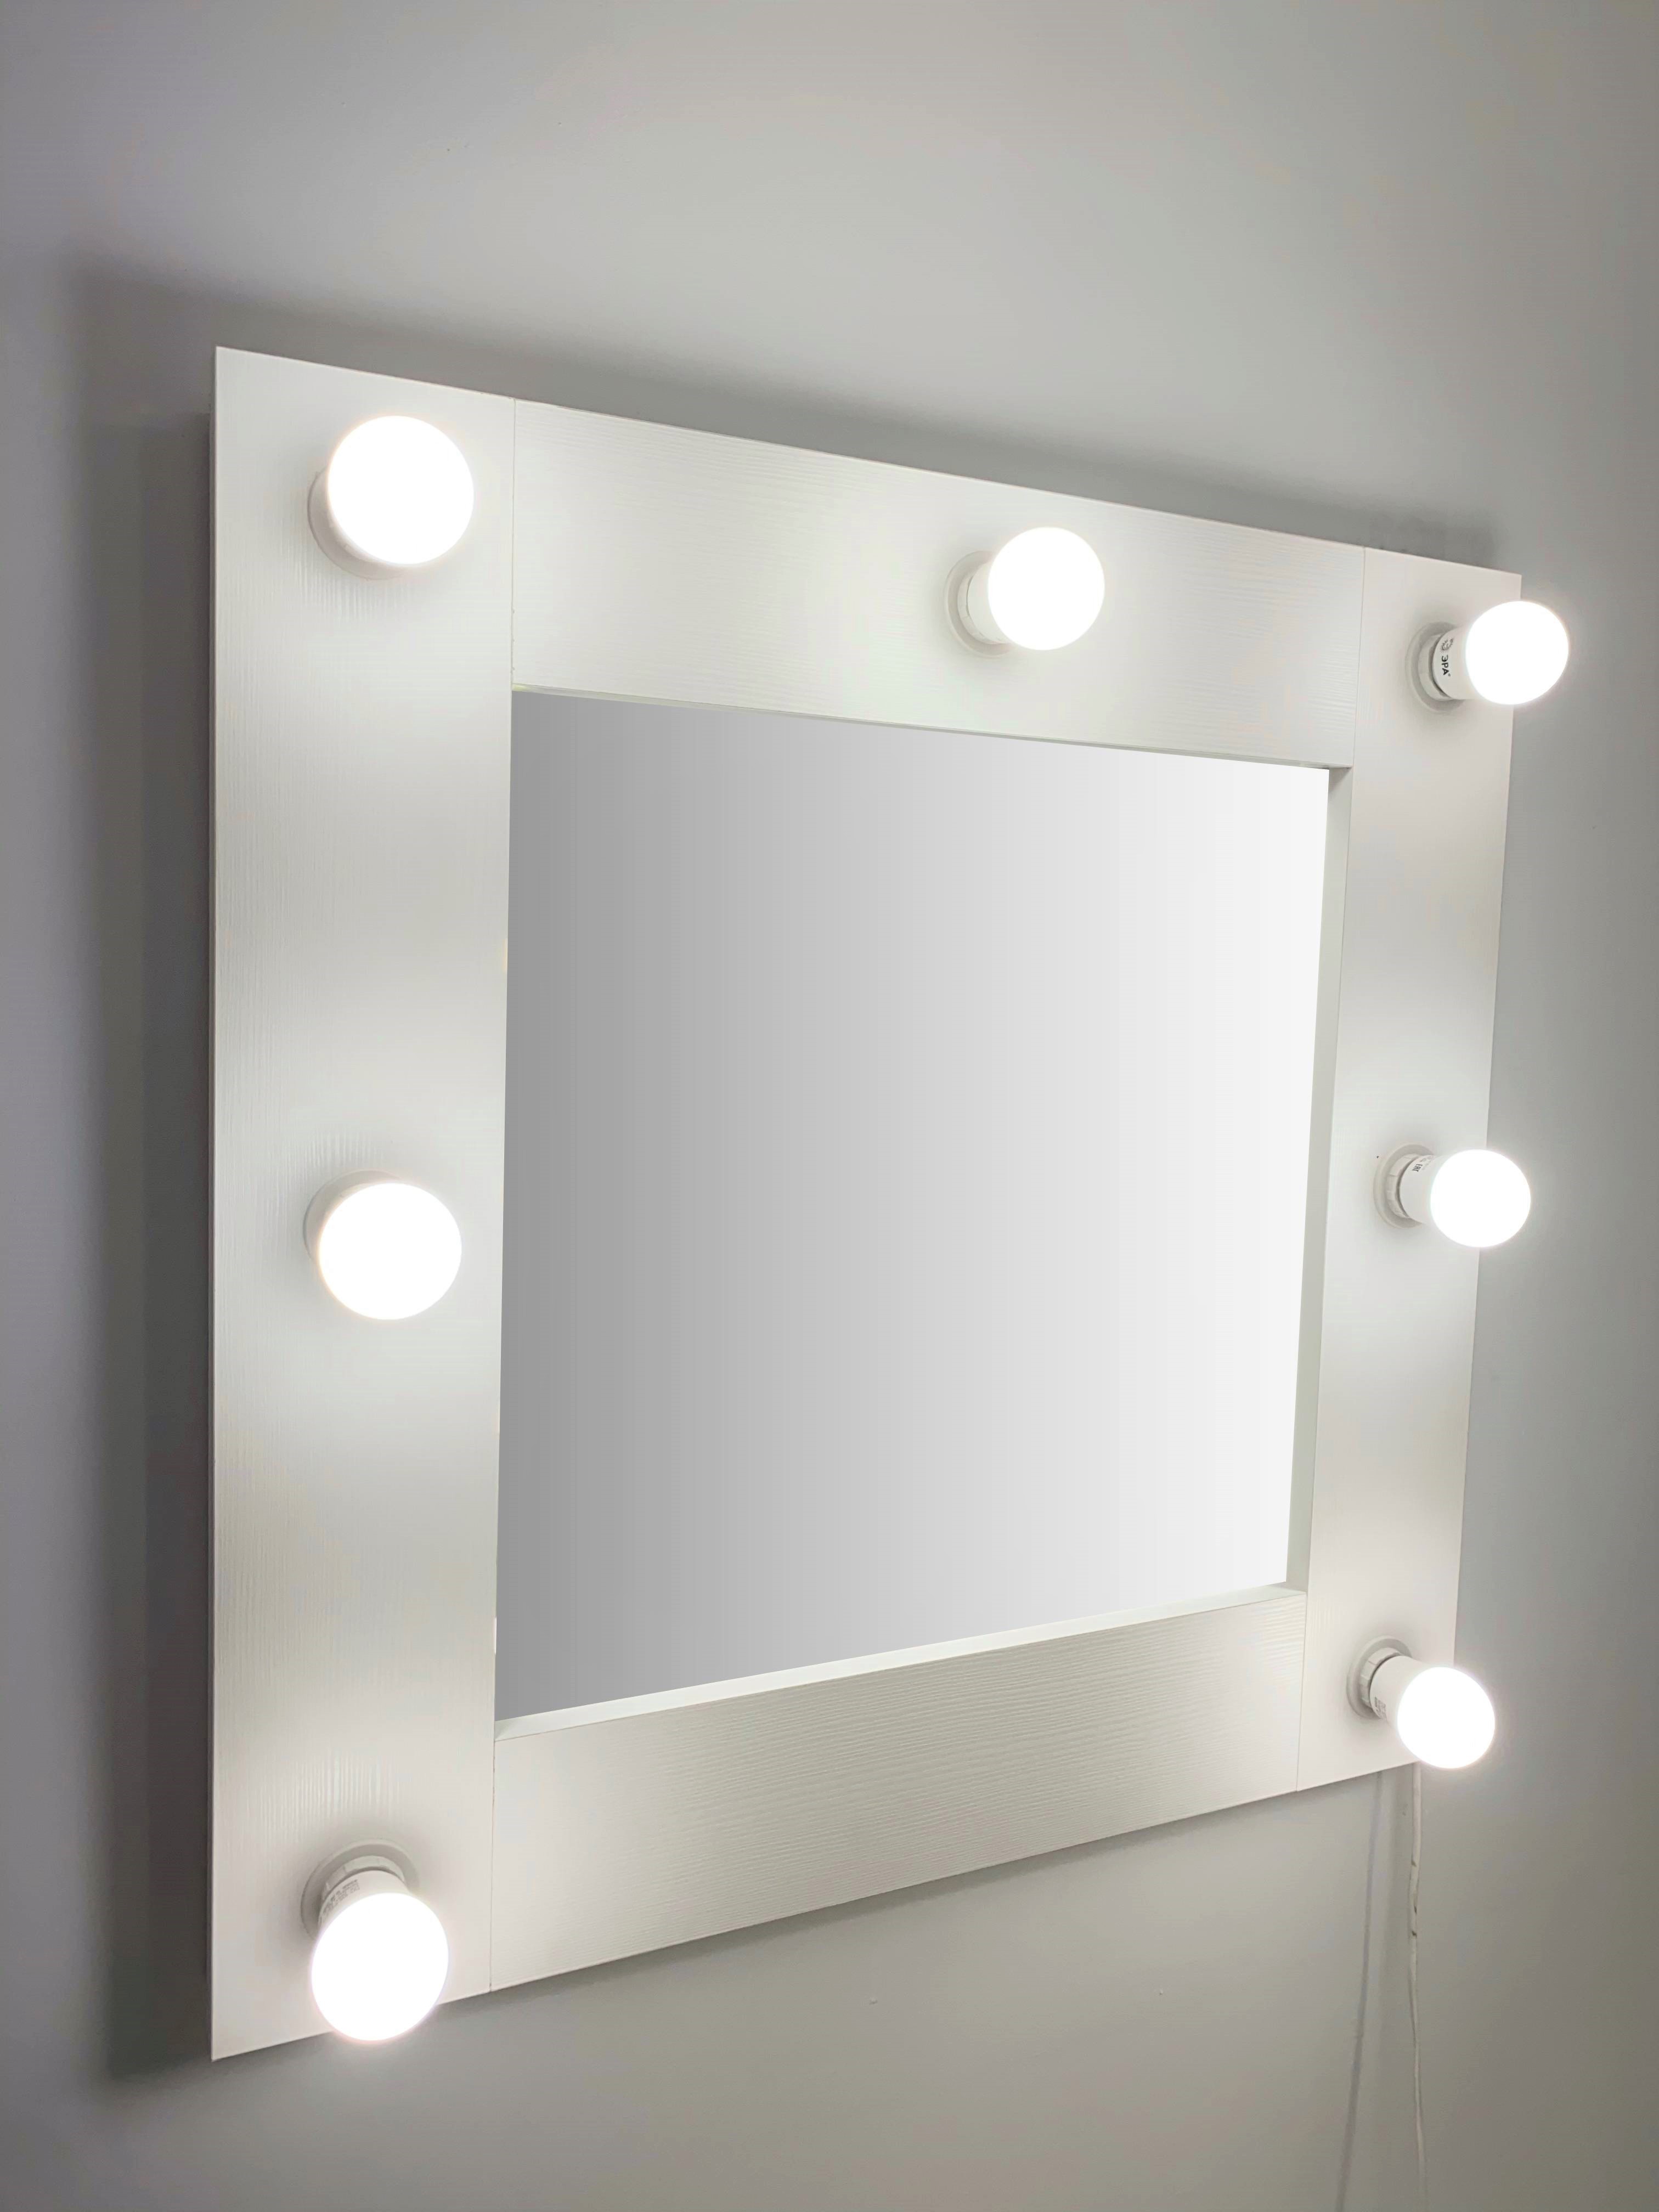 91053068 Гримерное зеркало с лампочками 60x60 см цвет белый STLM-0458978 BEAUTYUP